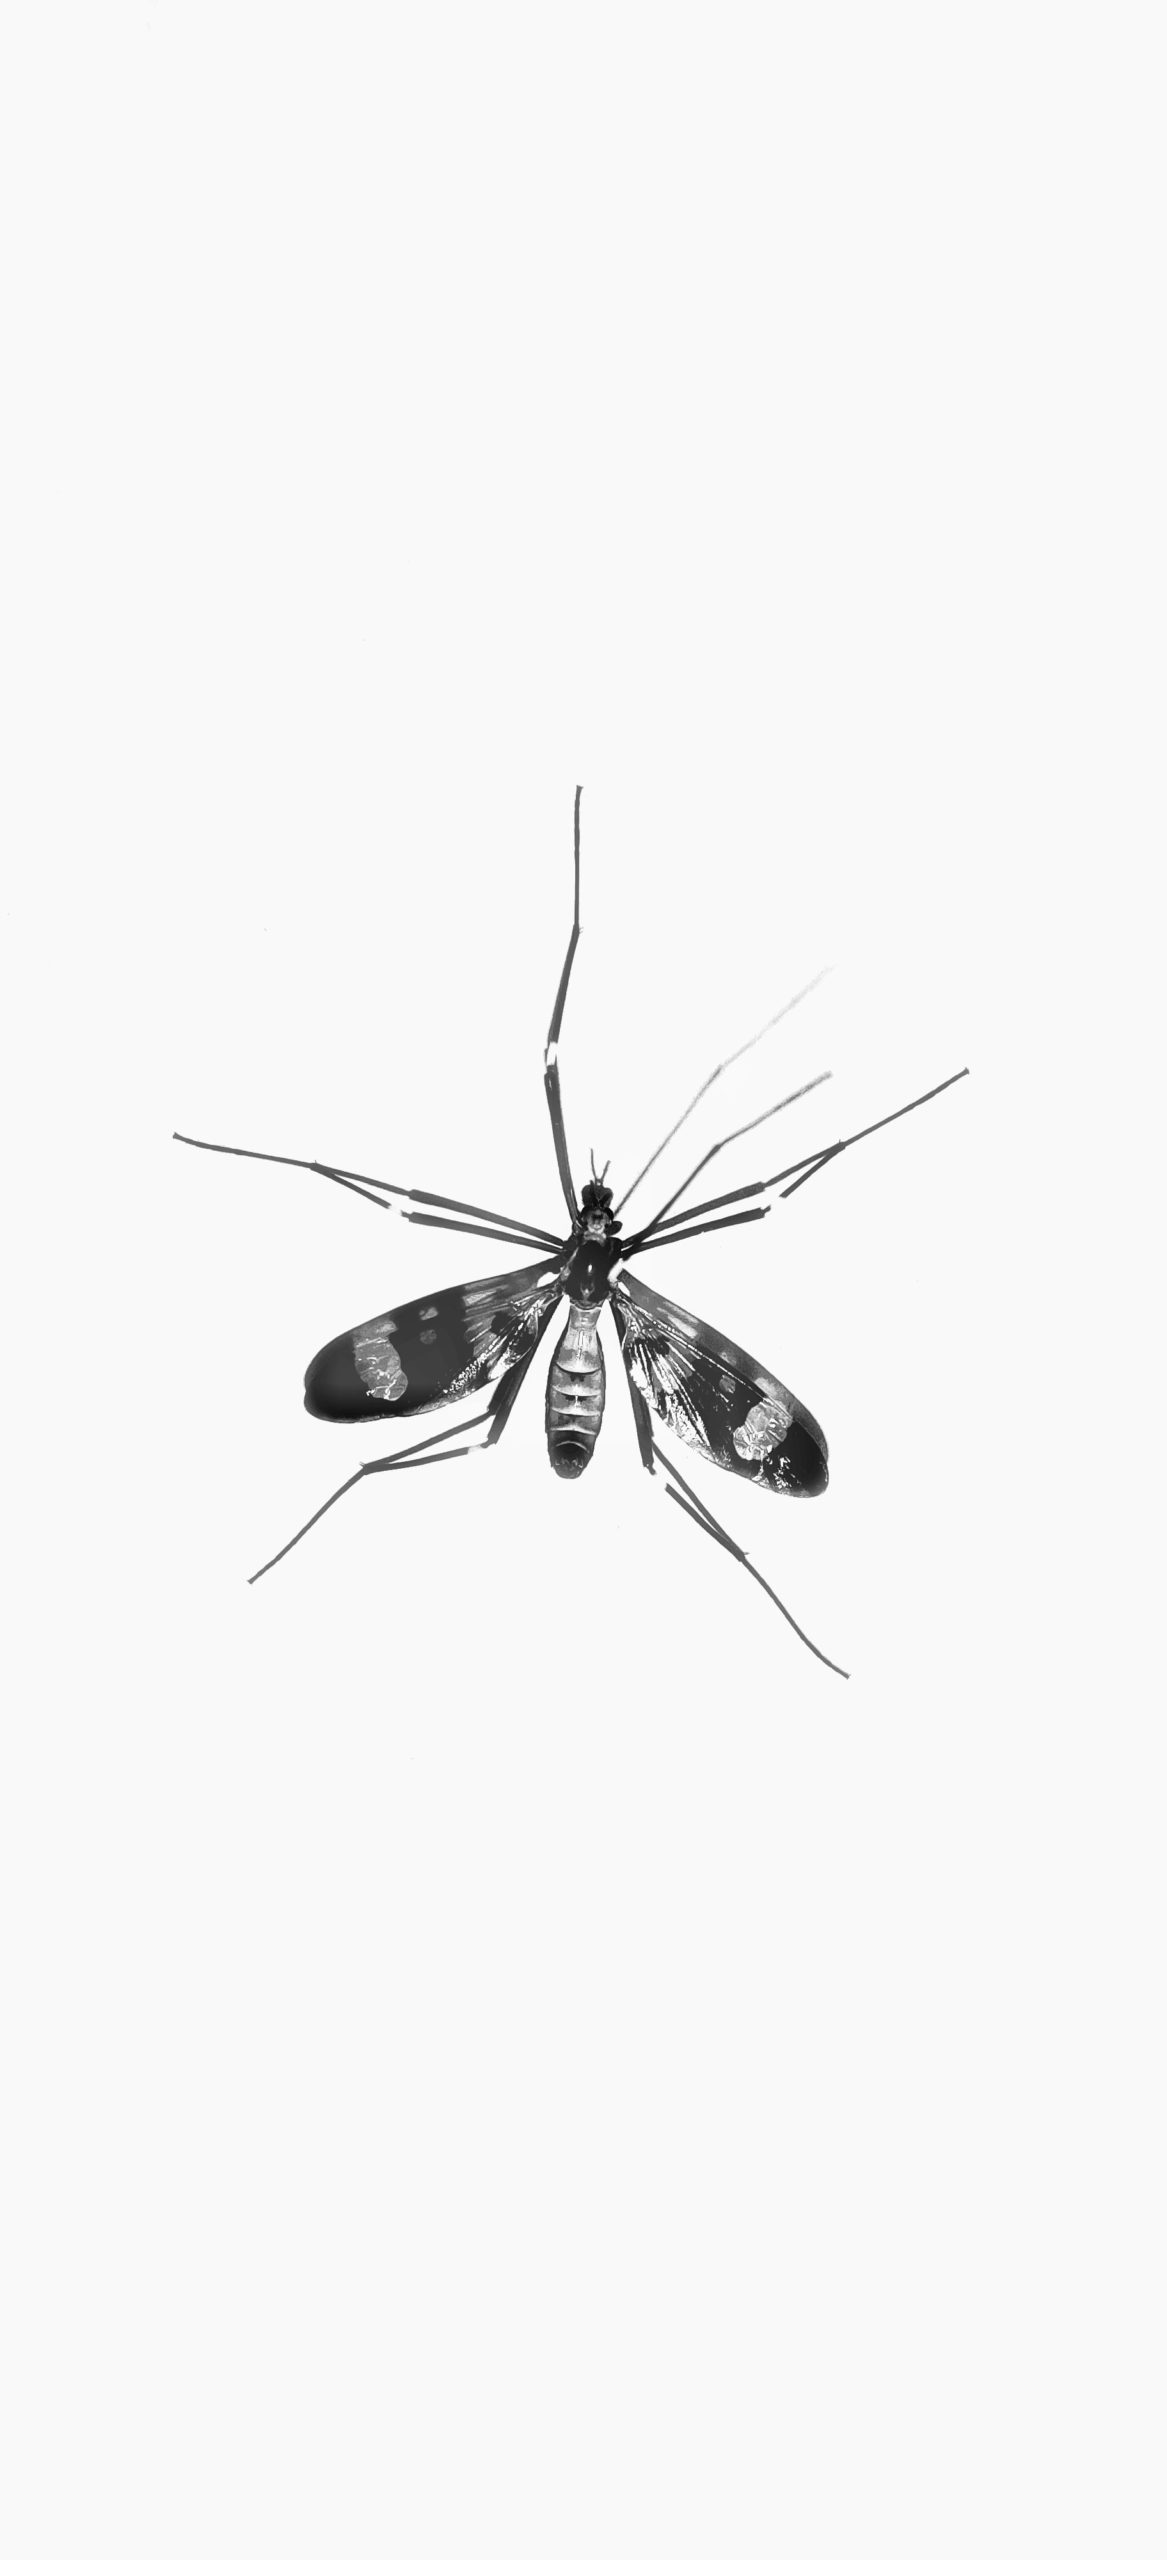 Le moustique, premier prédateur de l'Homme